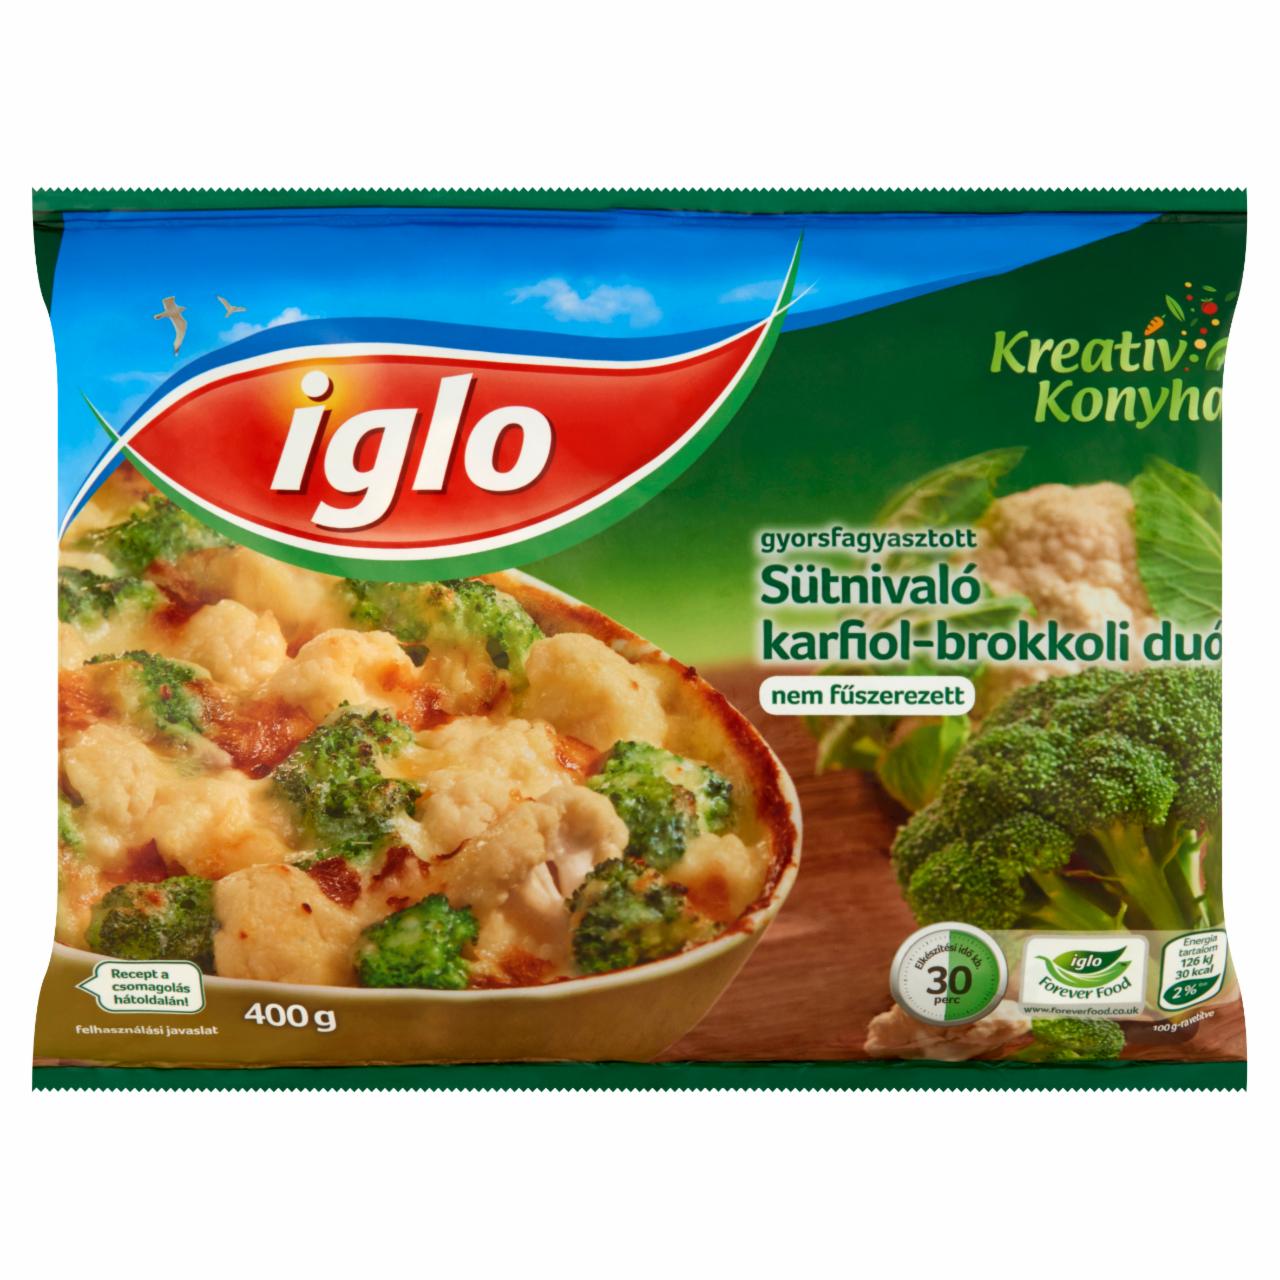 Képek - Iglo Kreatív Konyha gyorsfagyasztott sütnivaló karfiol-brokkoli duó 400 g